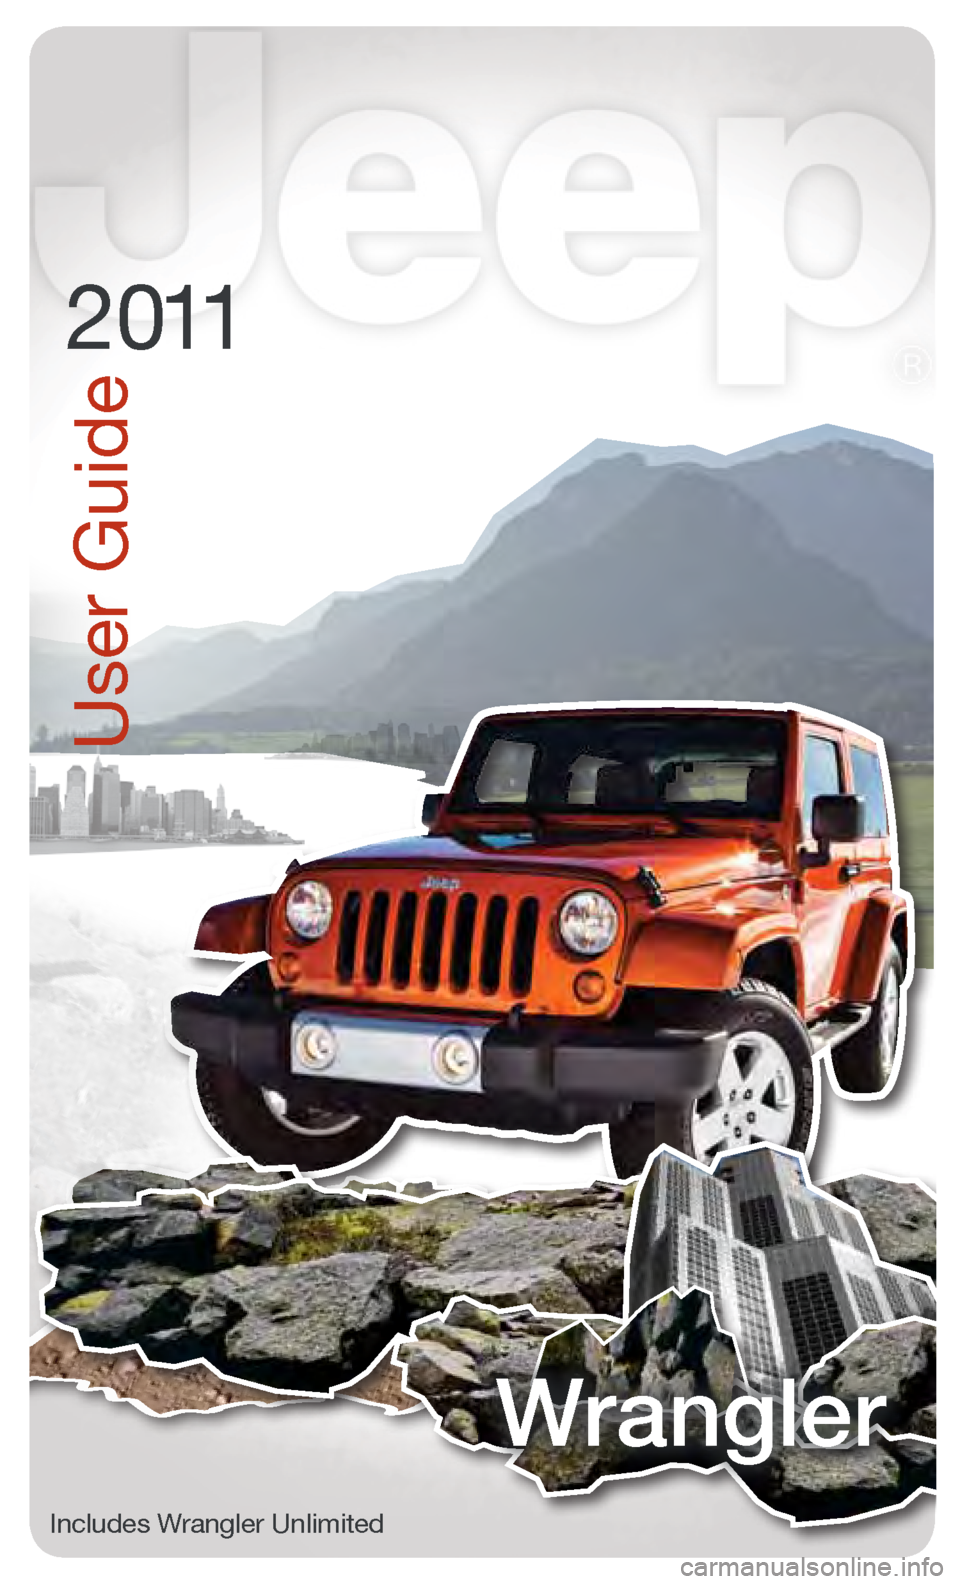 JEEP WRANGLER 2011 JK / 3.G User Guide User Guide
2011
Wrangler
Includes Wrangler Unli\fited                            